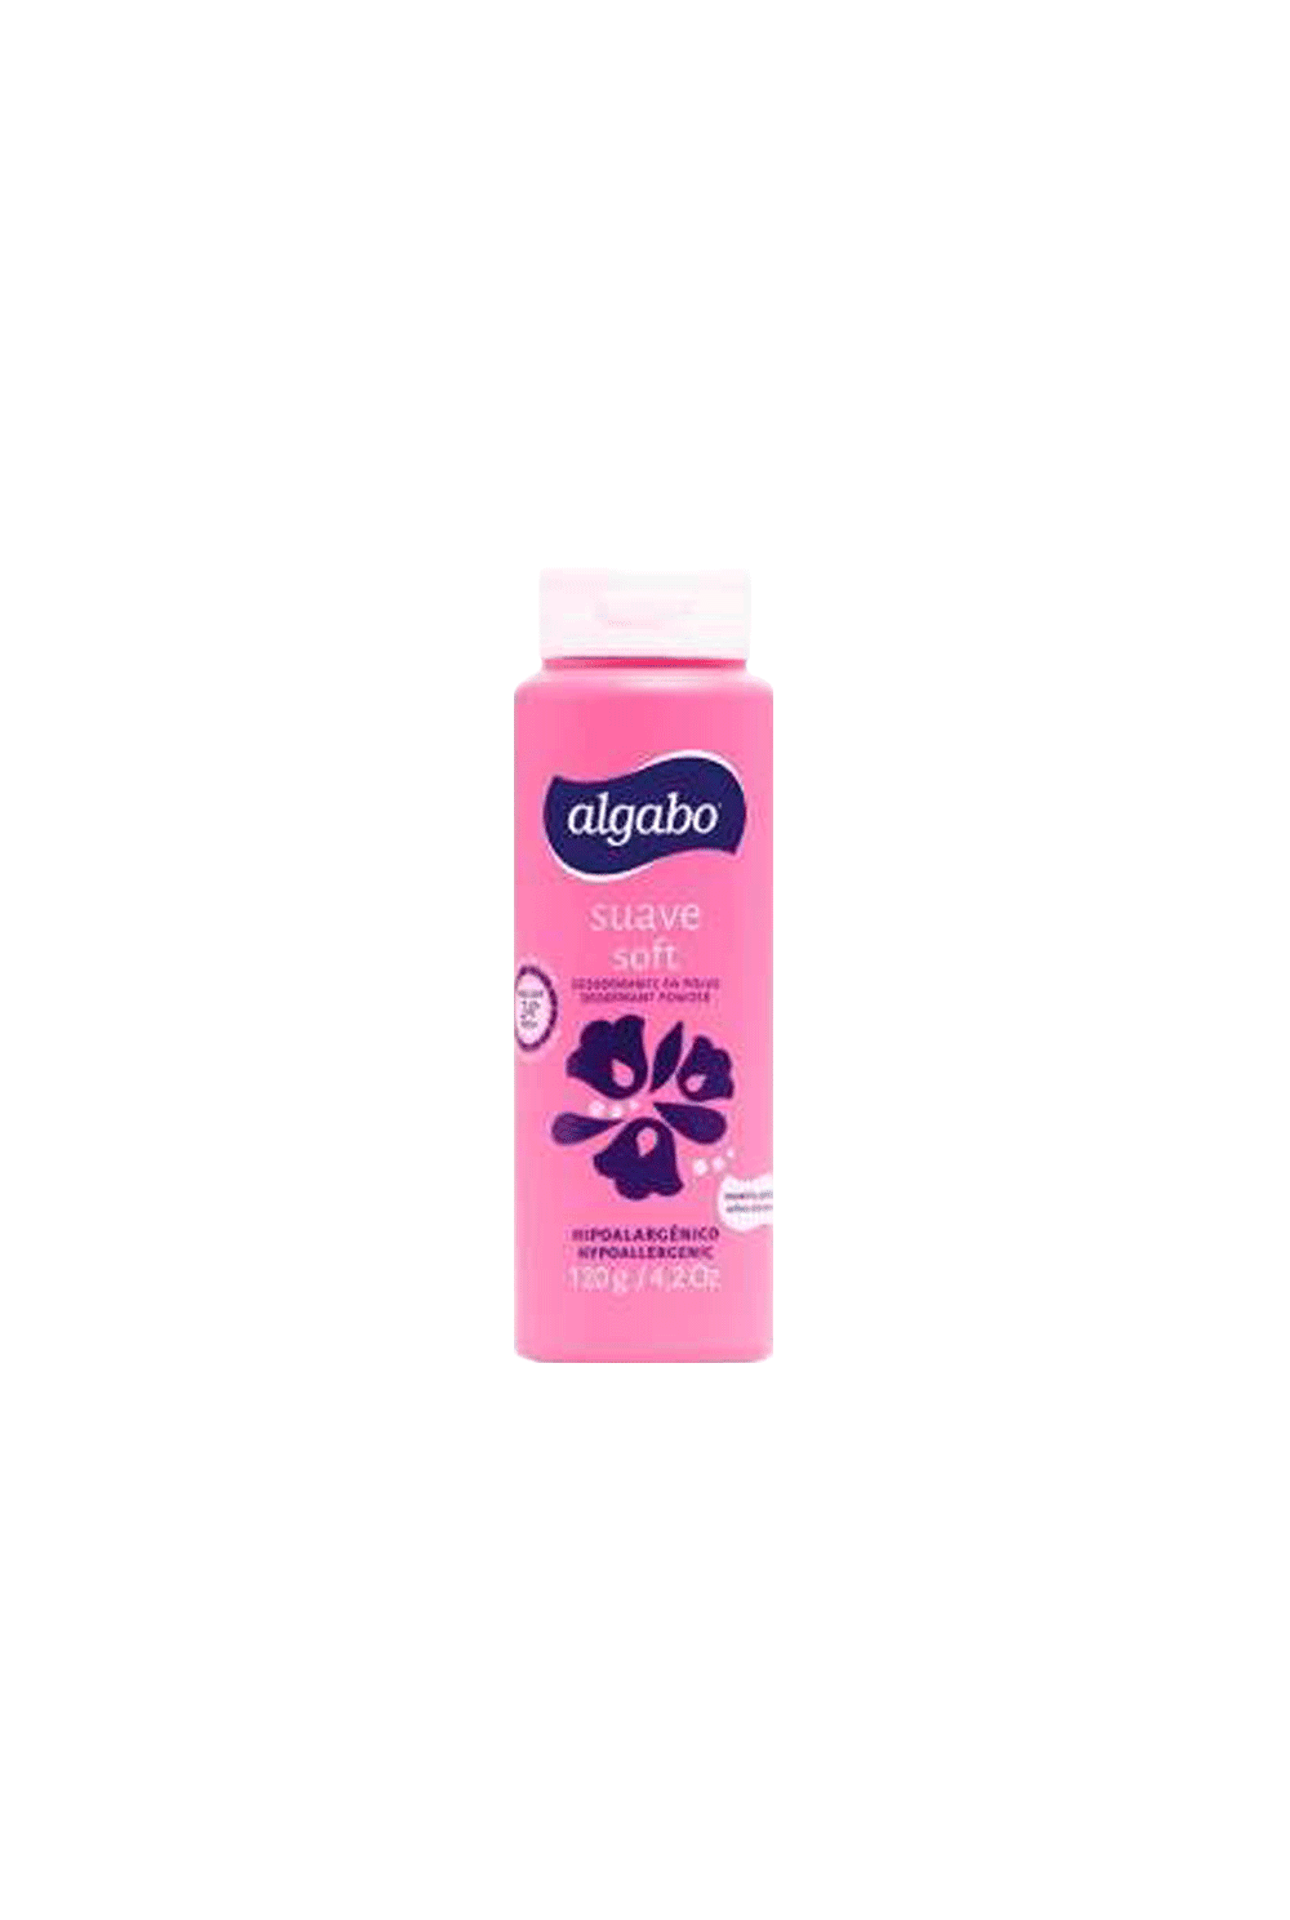 Algabo-Desodorante-En-Polvo-Suave-Algabo-Talquera-Rosa-x-120-gr-7791274198120_img1